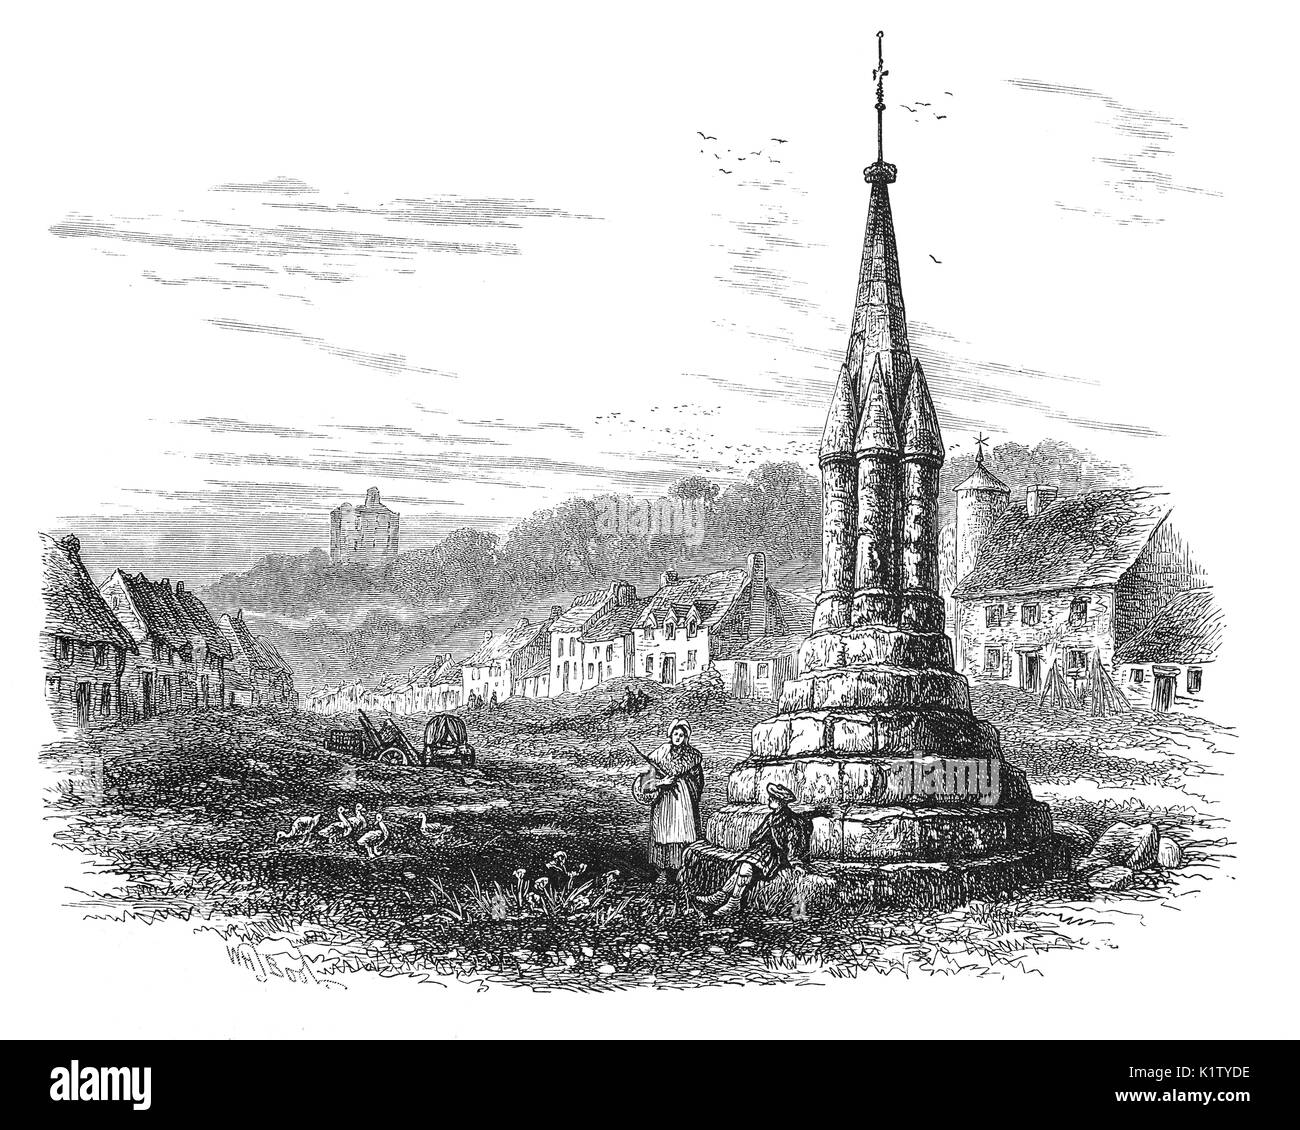 1870 : Les sections locales par le marché médiéval croix à Norham, juste au sud de la rivière Tweed et la frontière avec l'Ecosse, Northumberland, England Banque D'Images